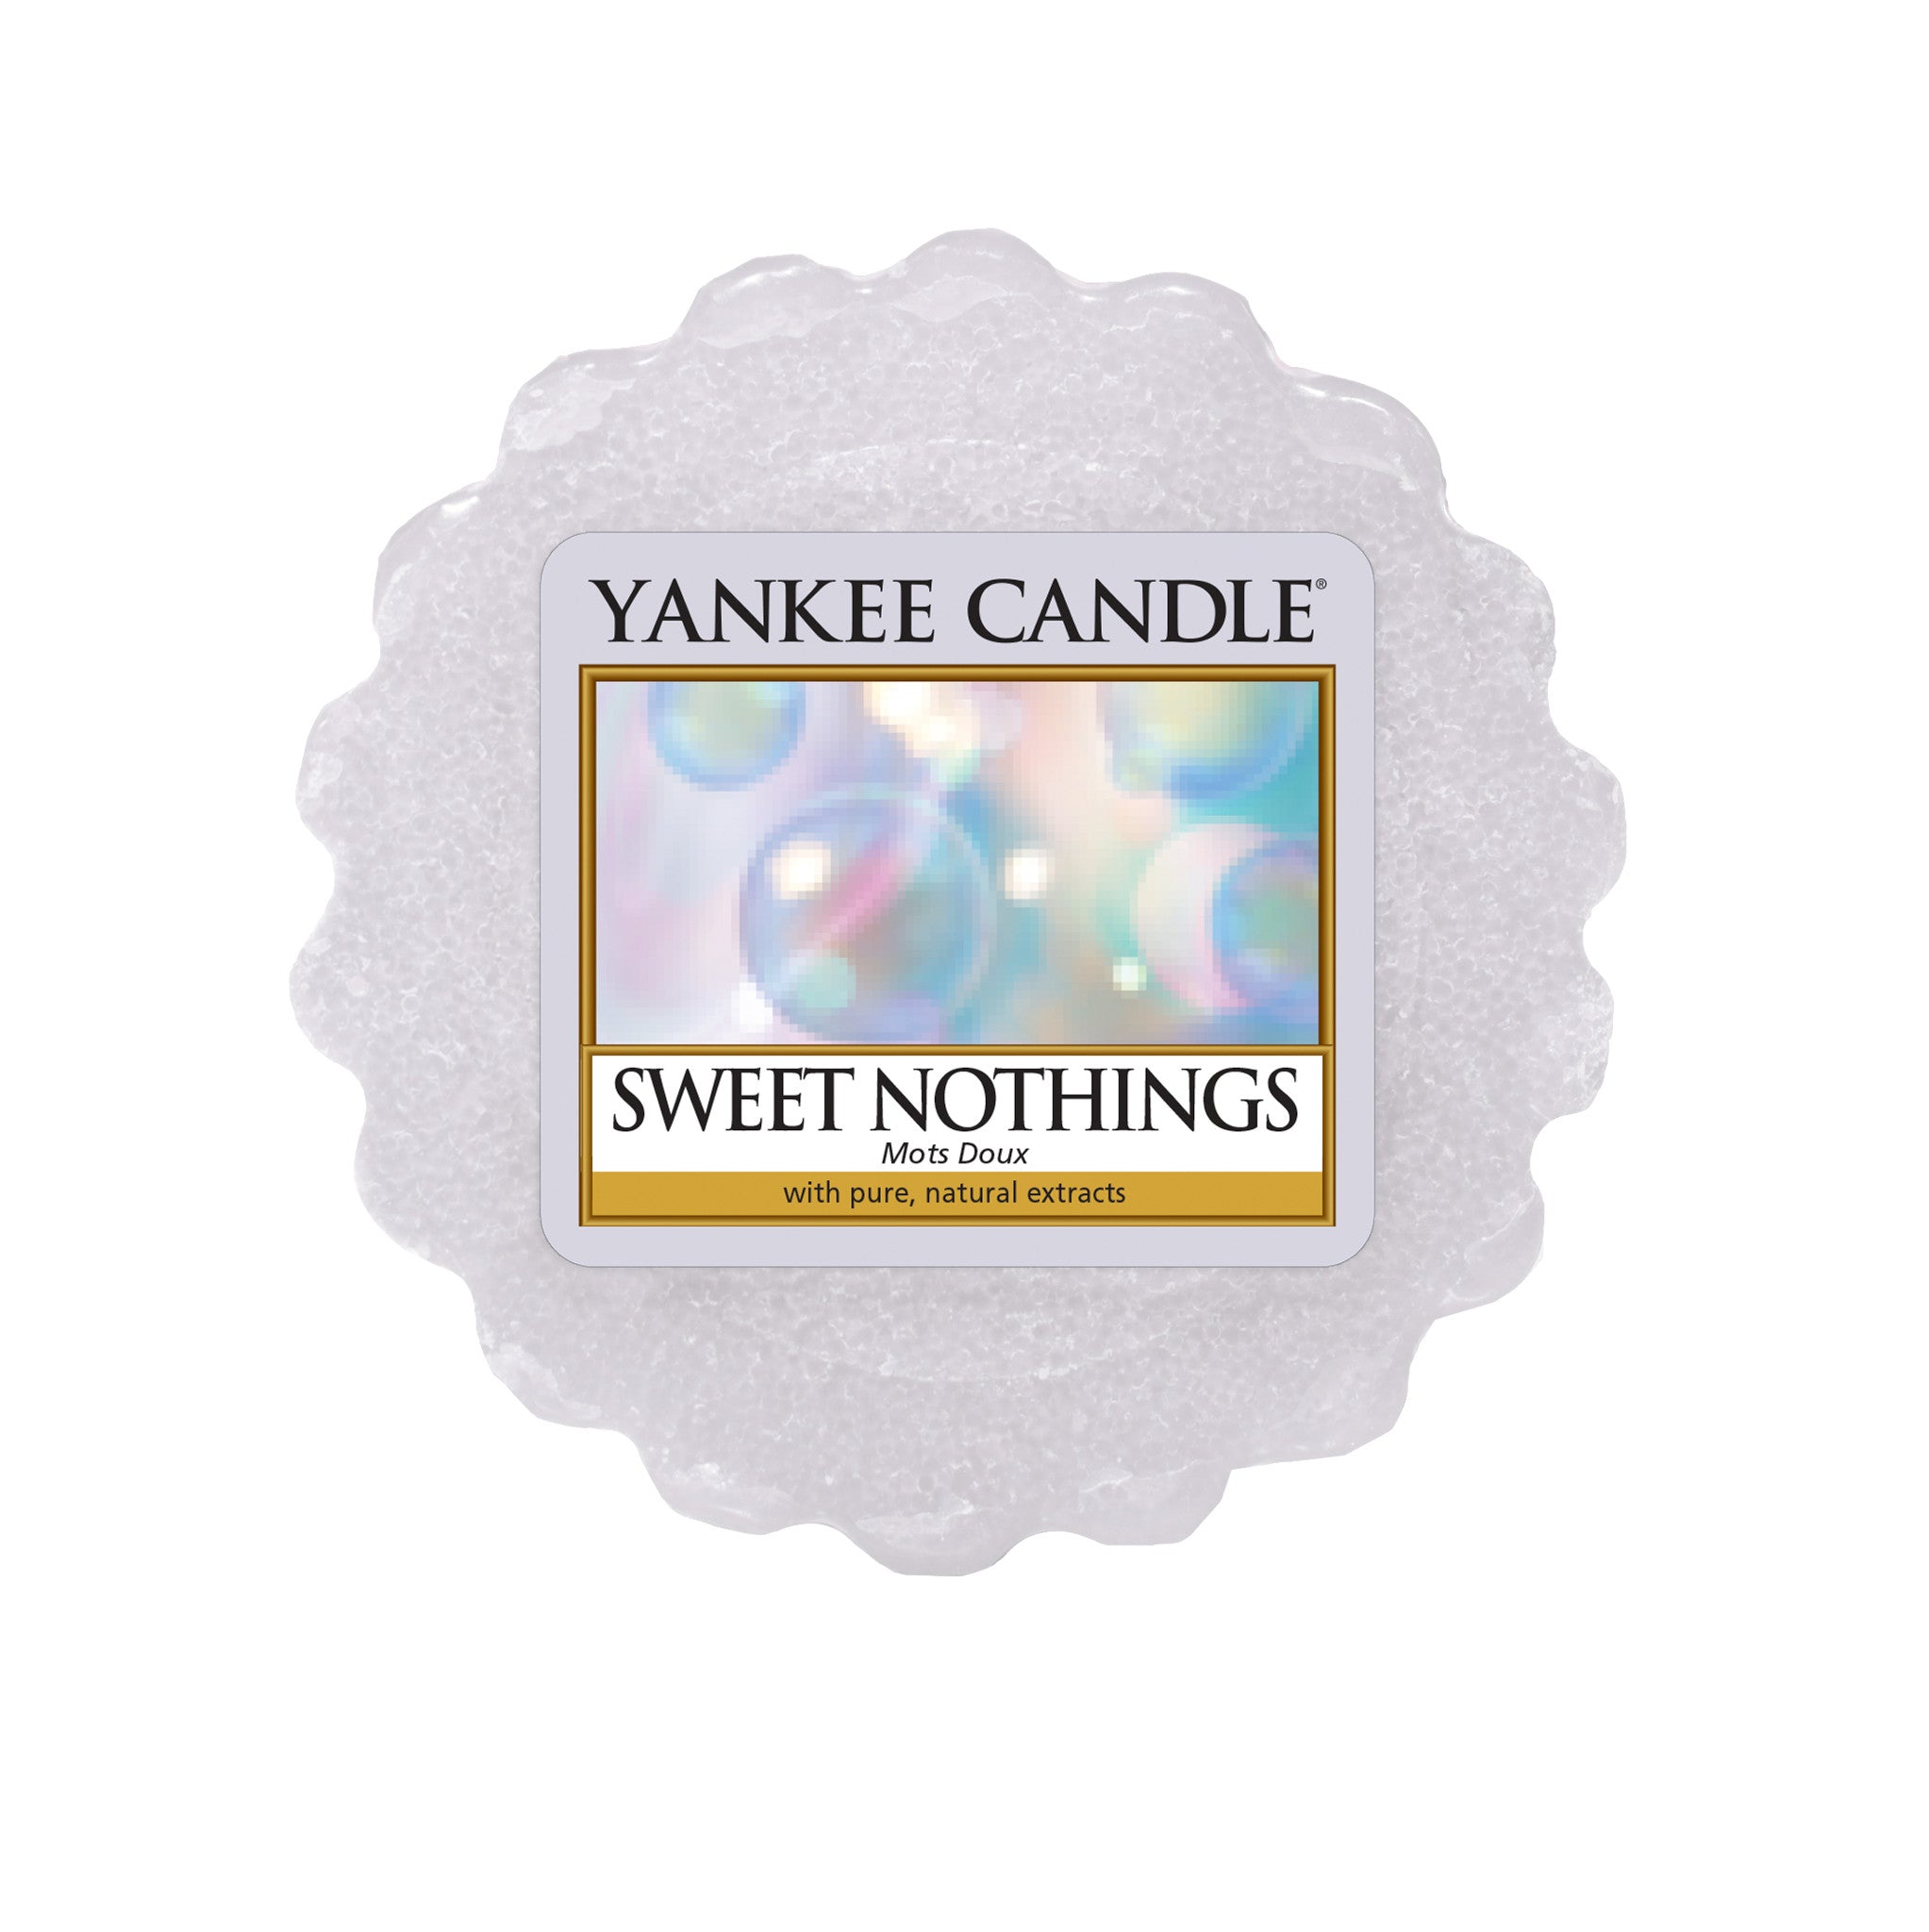 SWEET NOTHINGS -Yankee Candle- Tart